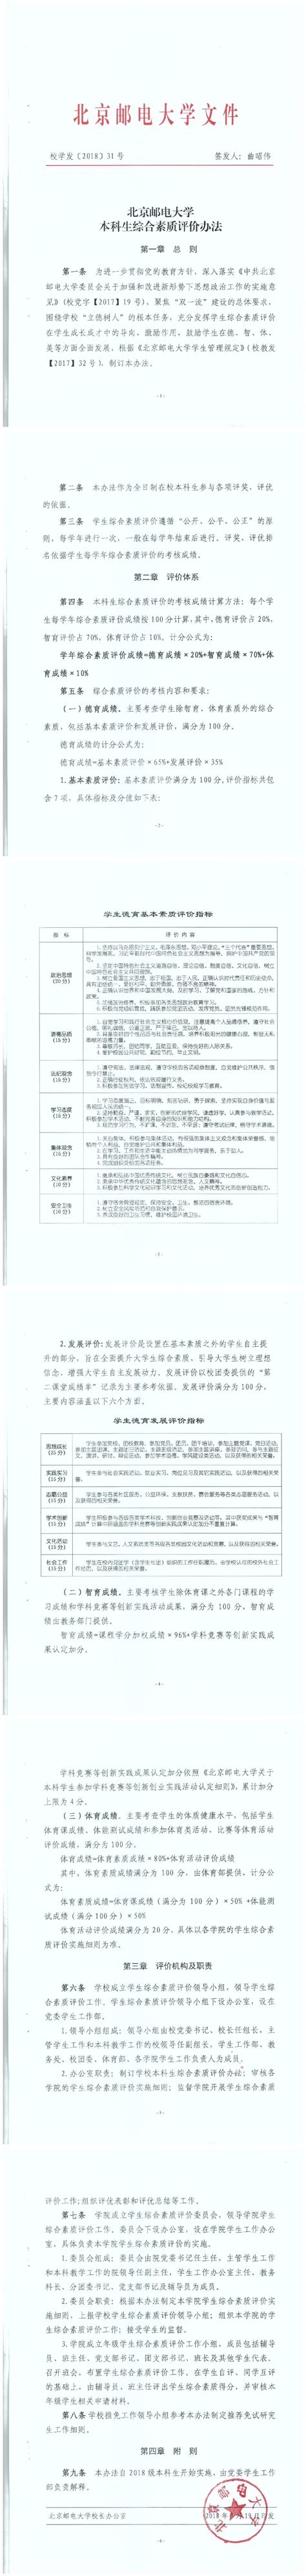 北京邮电大学本科生综合素质评价办法（校学发[2018]31号）-信息 ...